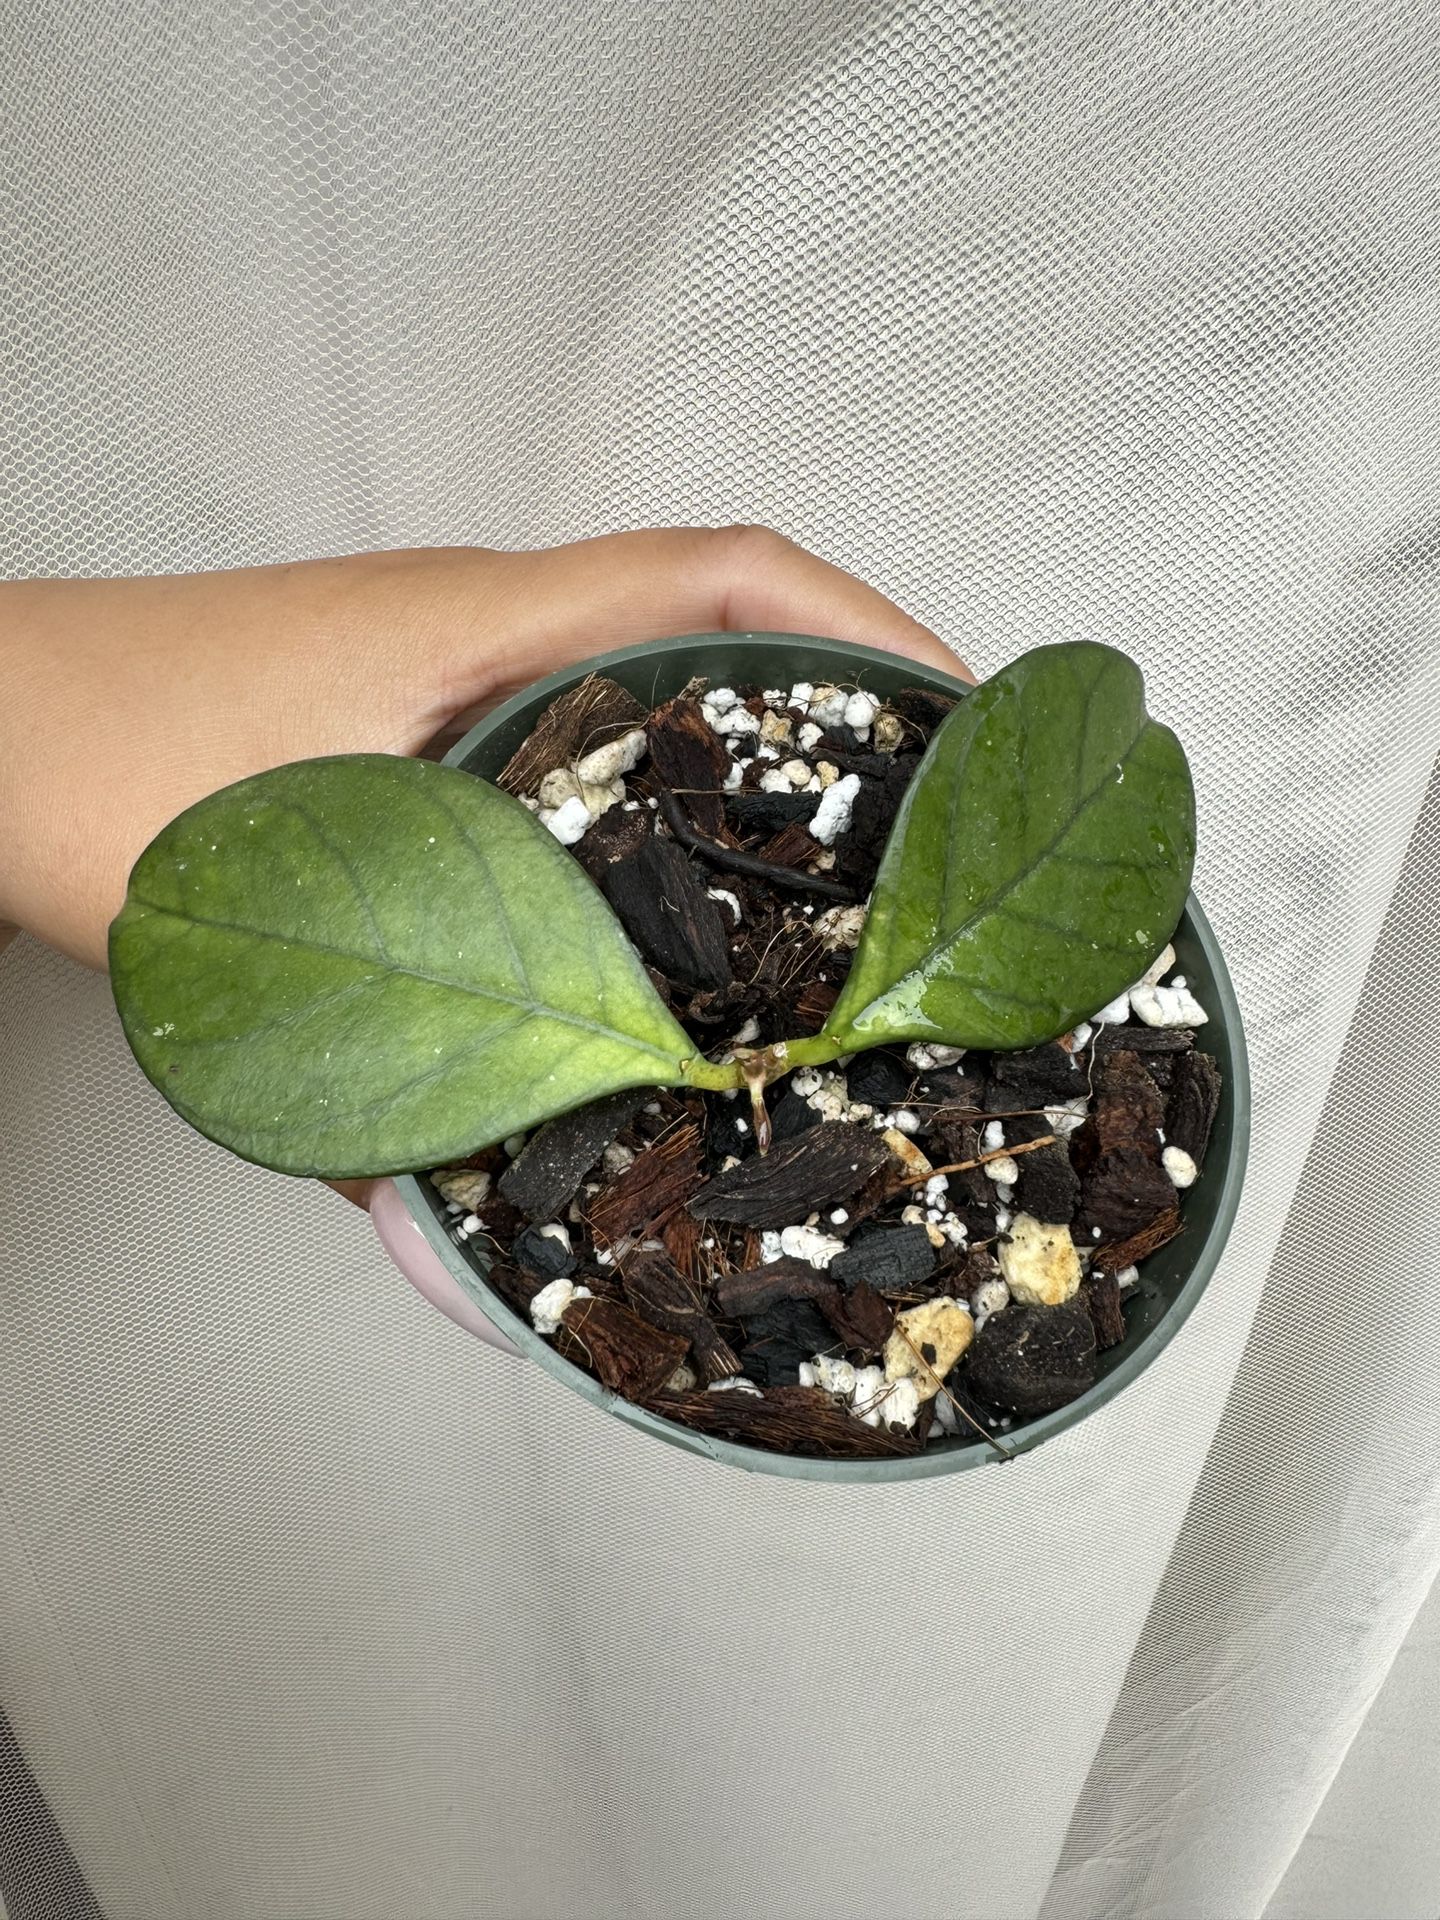 Hoya Hainanensis - 4” Pot